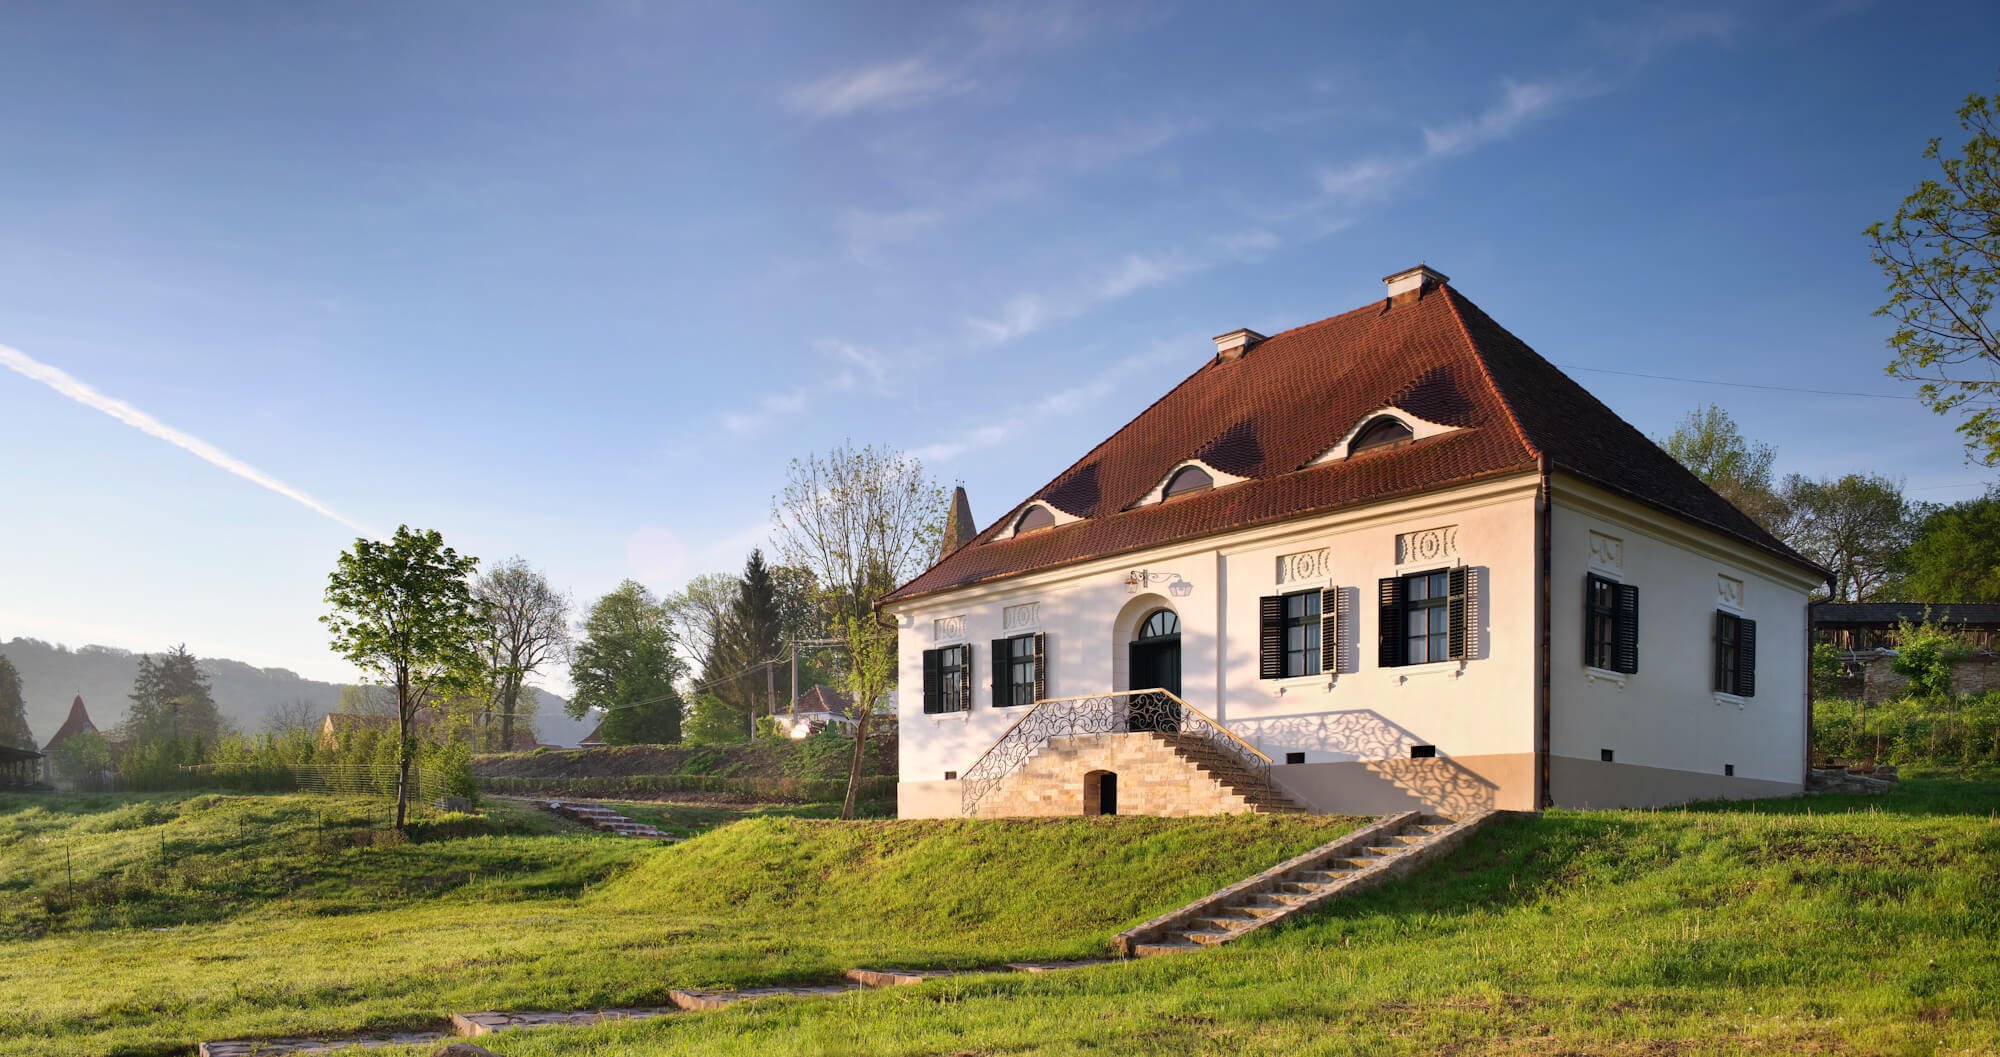 Oživljena 300 let stara domačija v mistični Transilvaniji